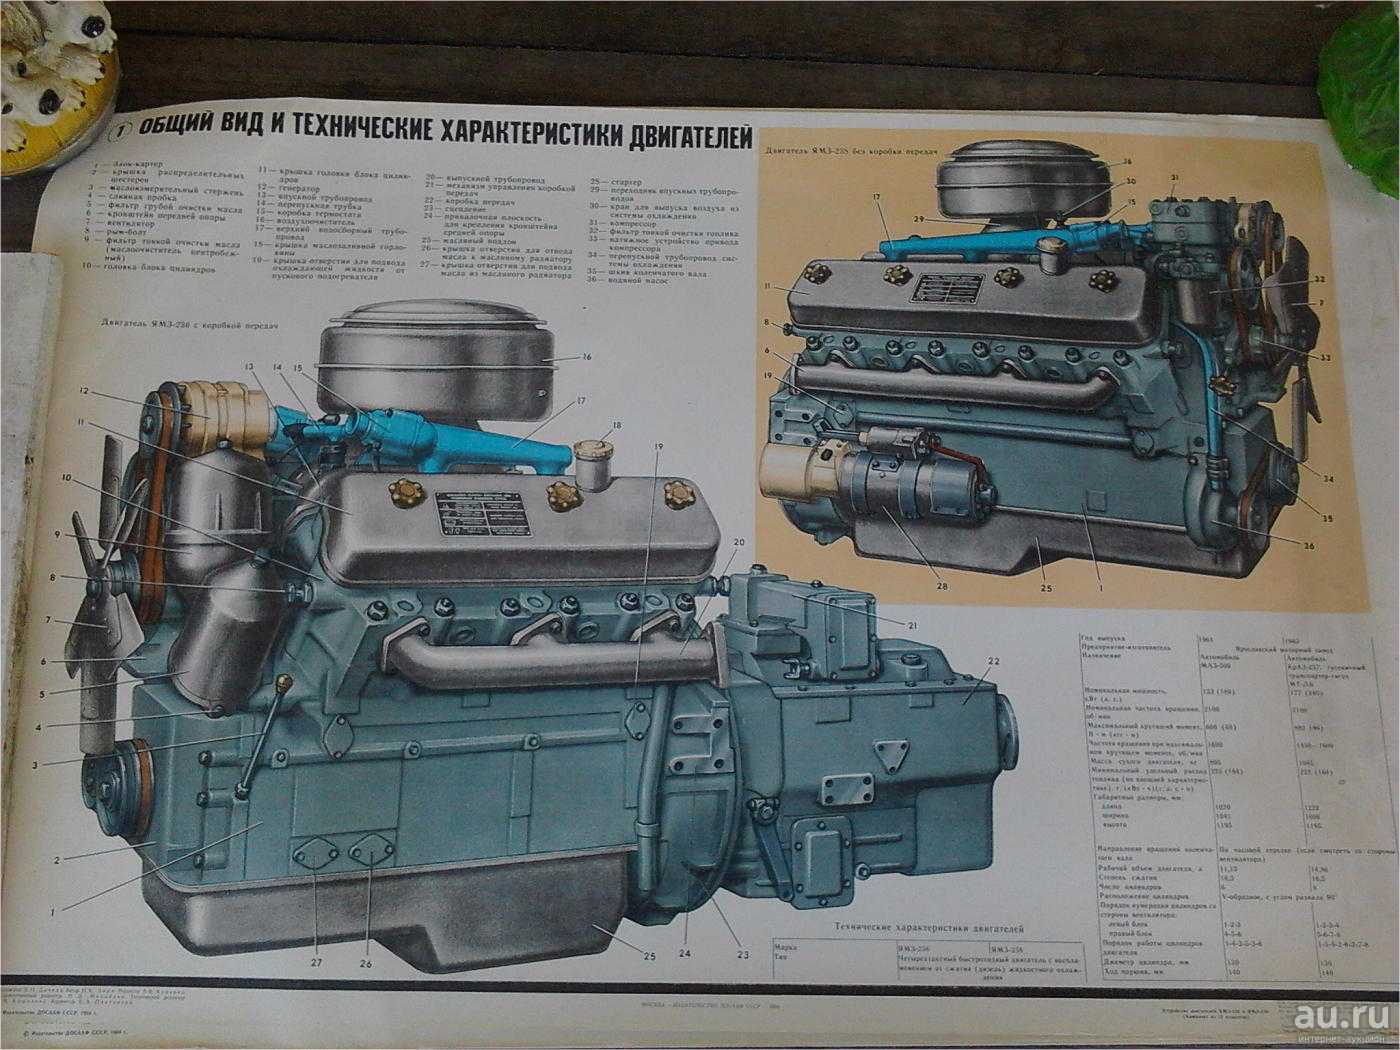 Двигатель ямз-236: характеристики, обслуживание, ремонт и модификации